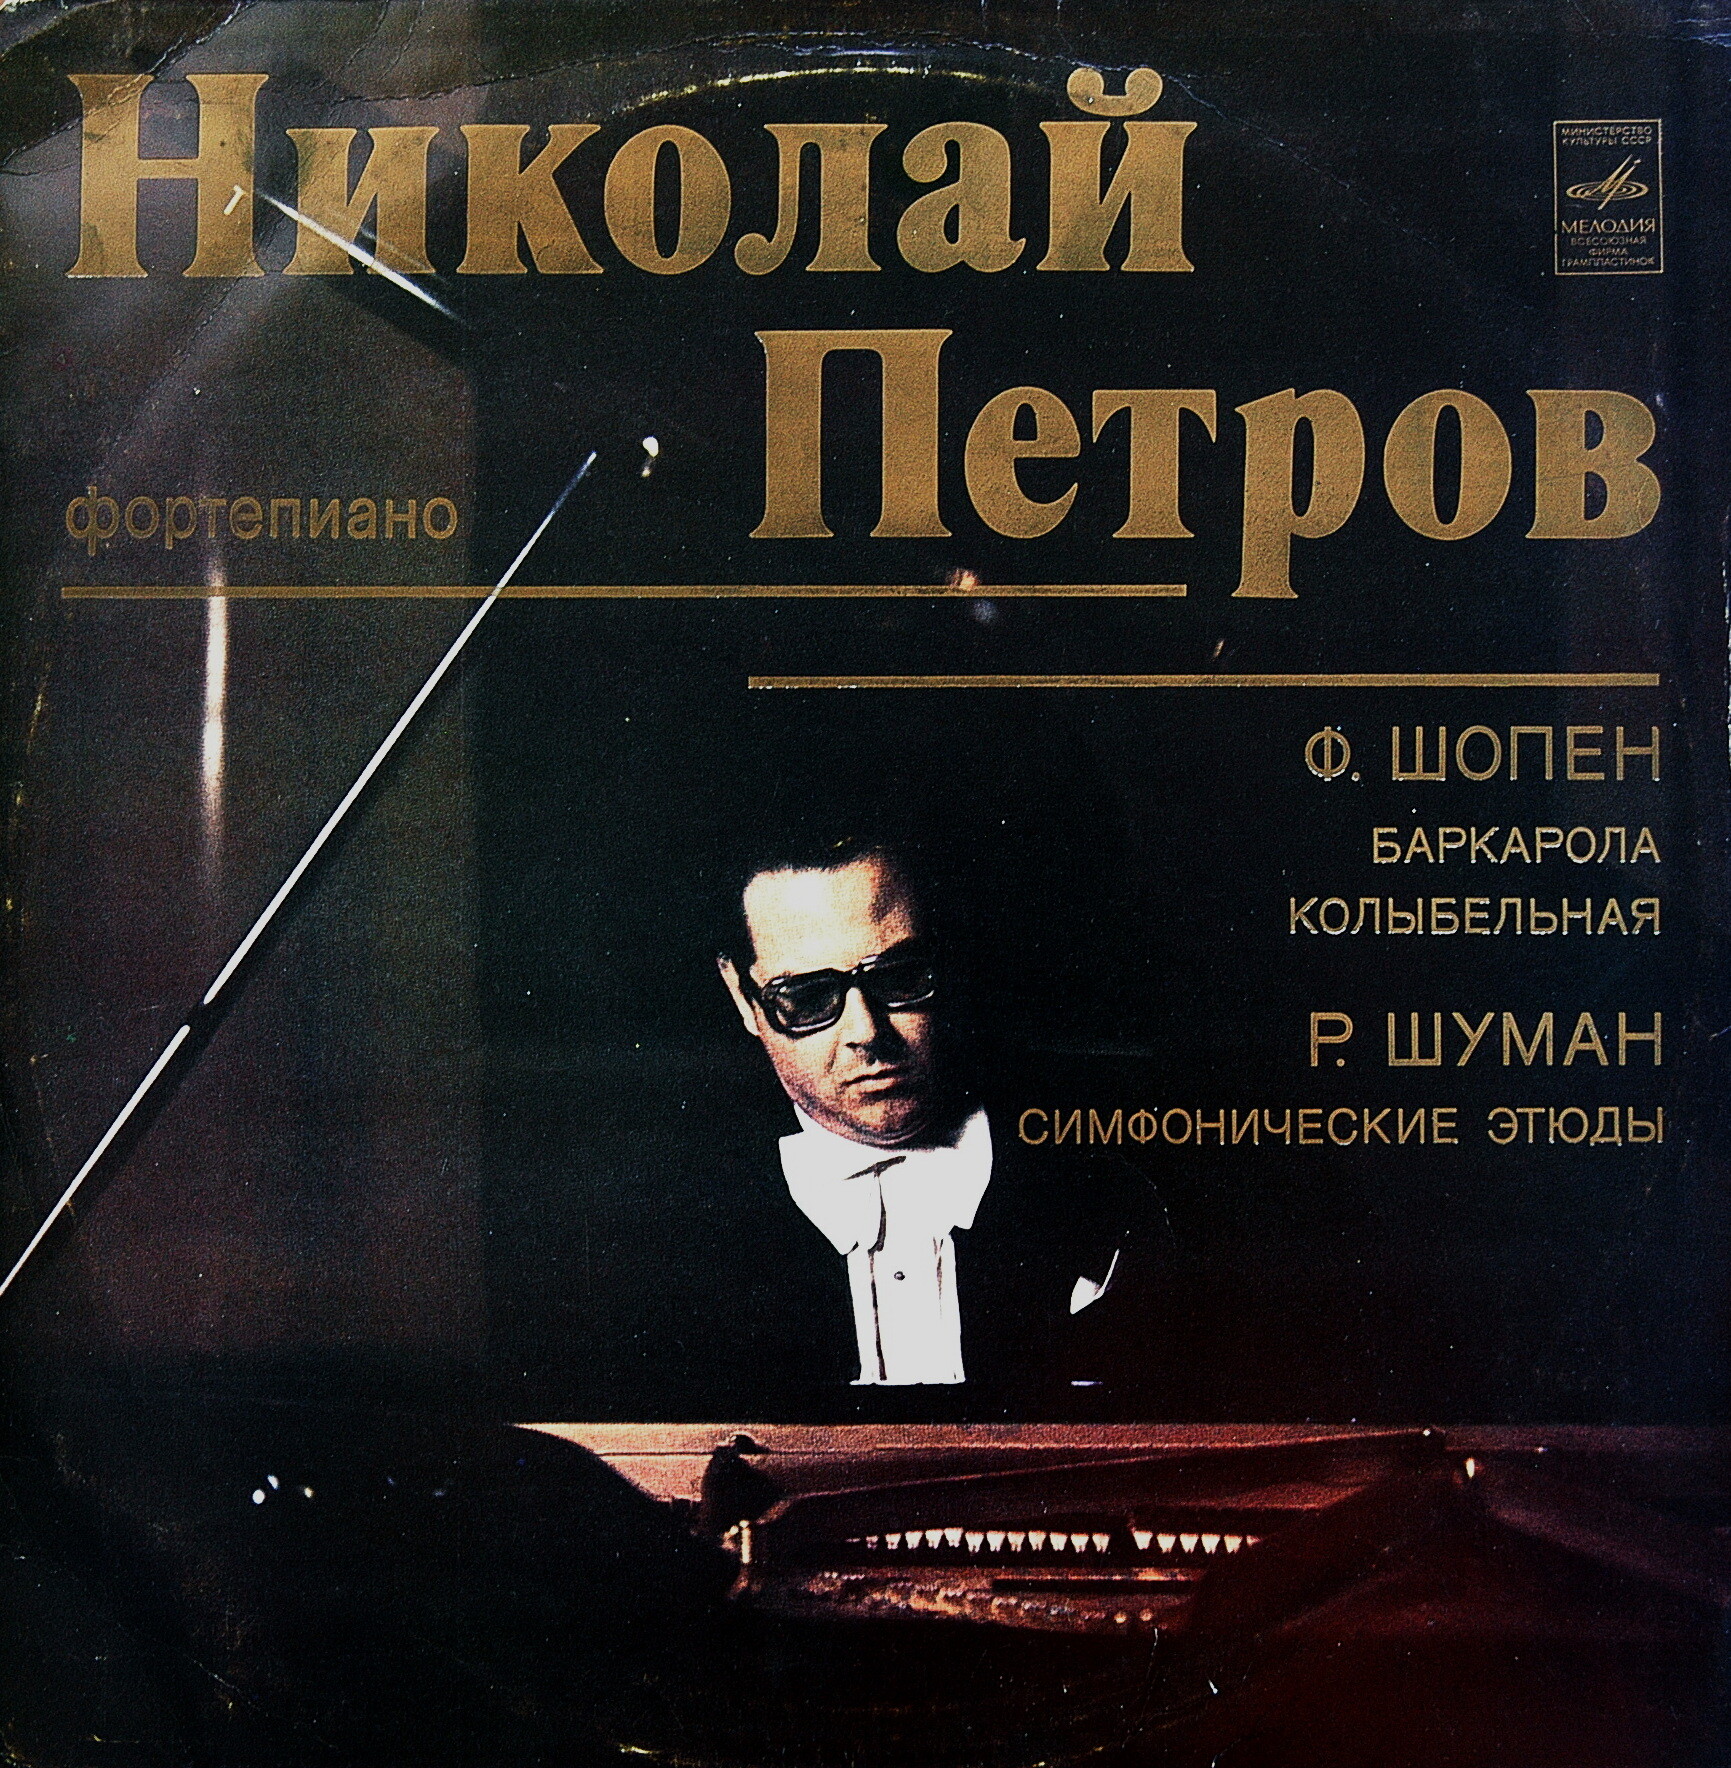 Николай ПЕТРОВ, фортепиано.